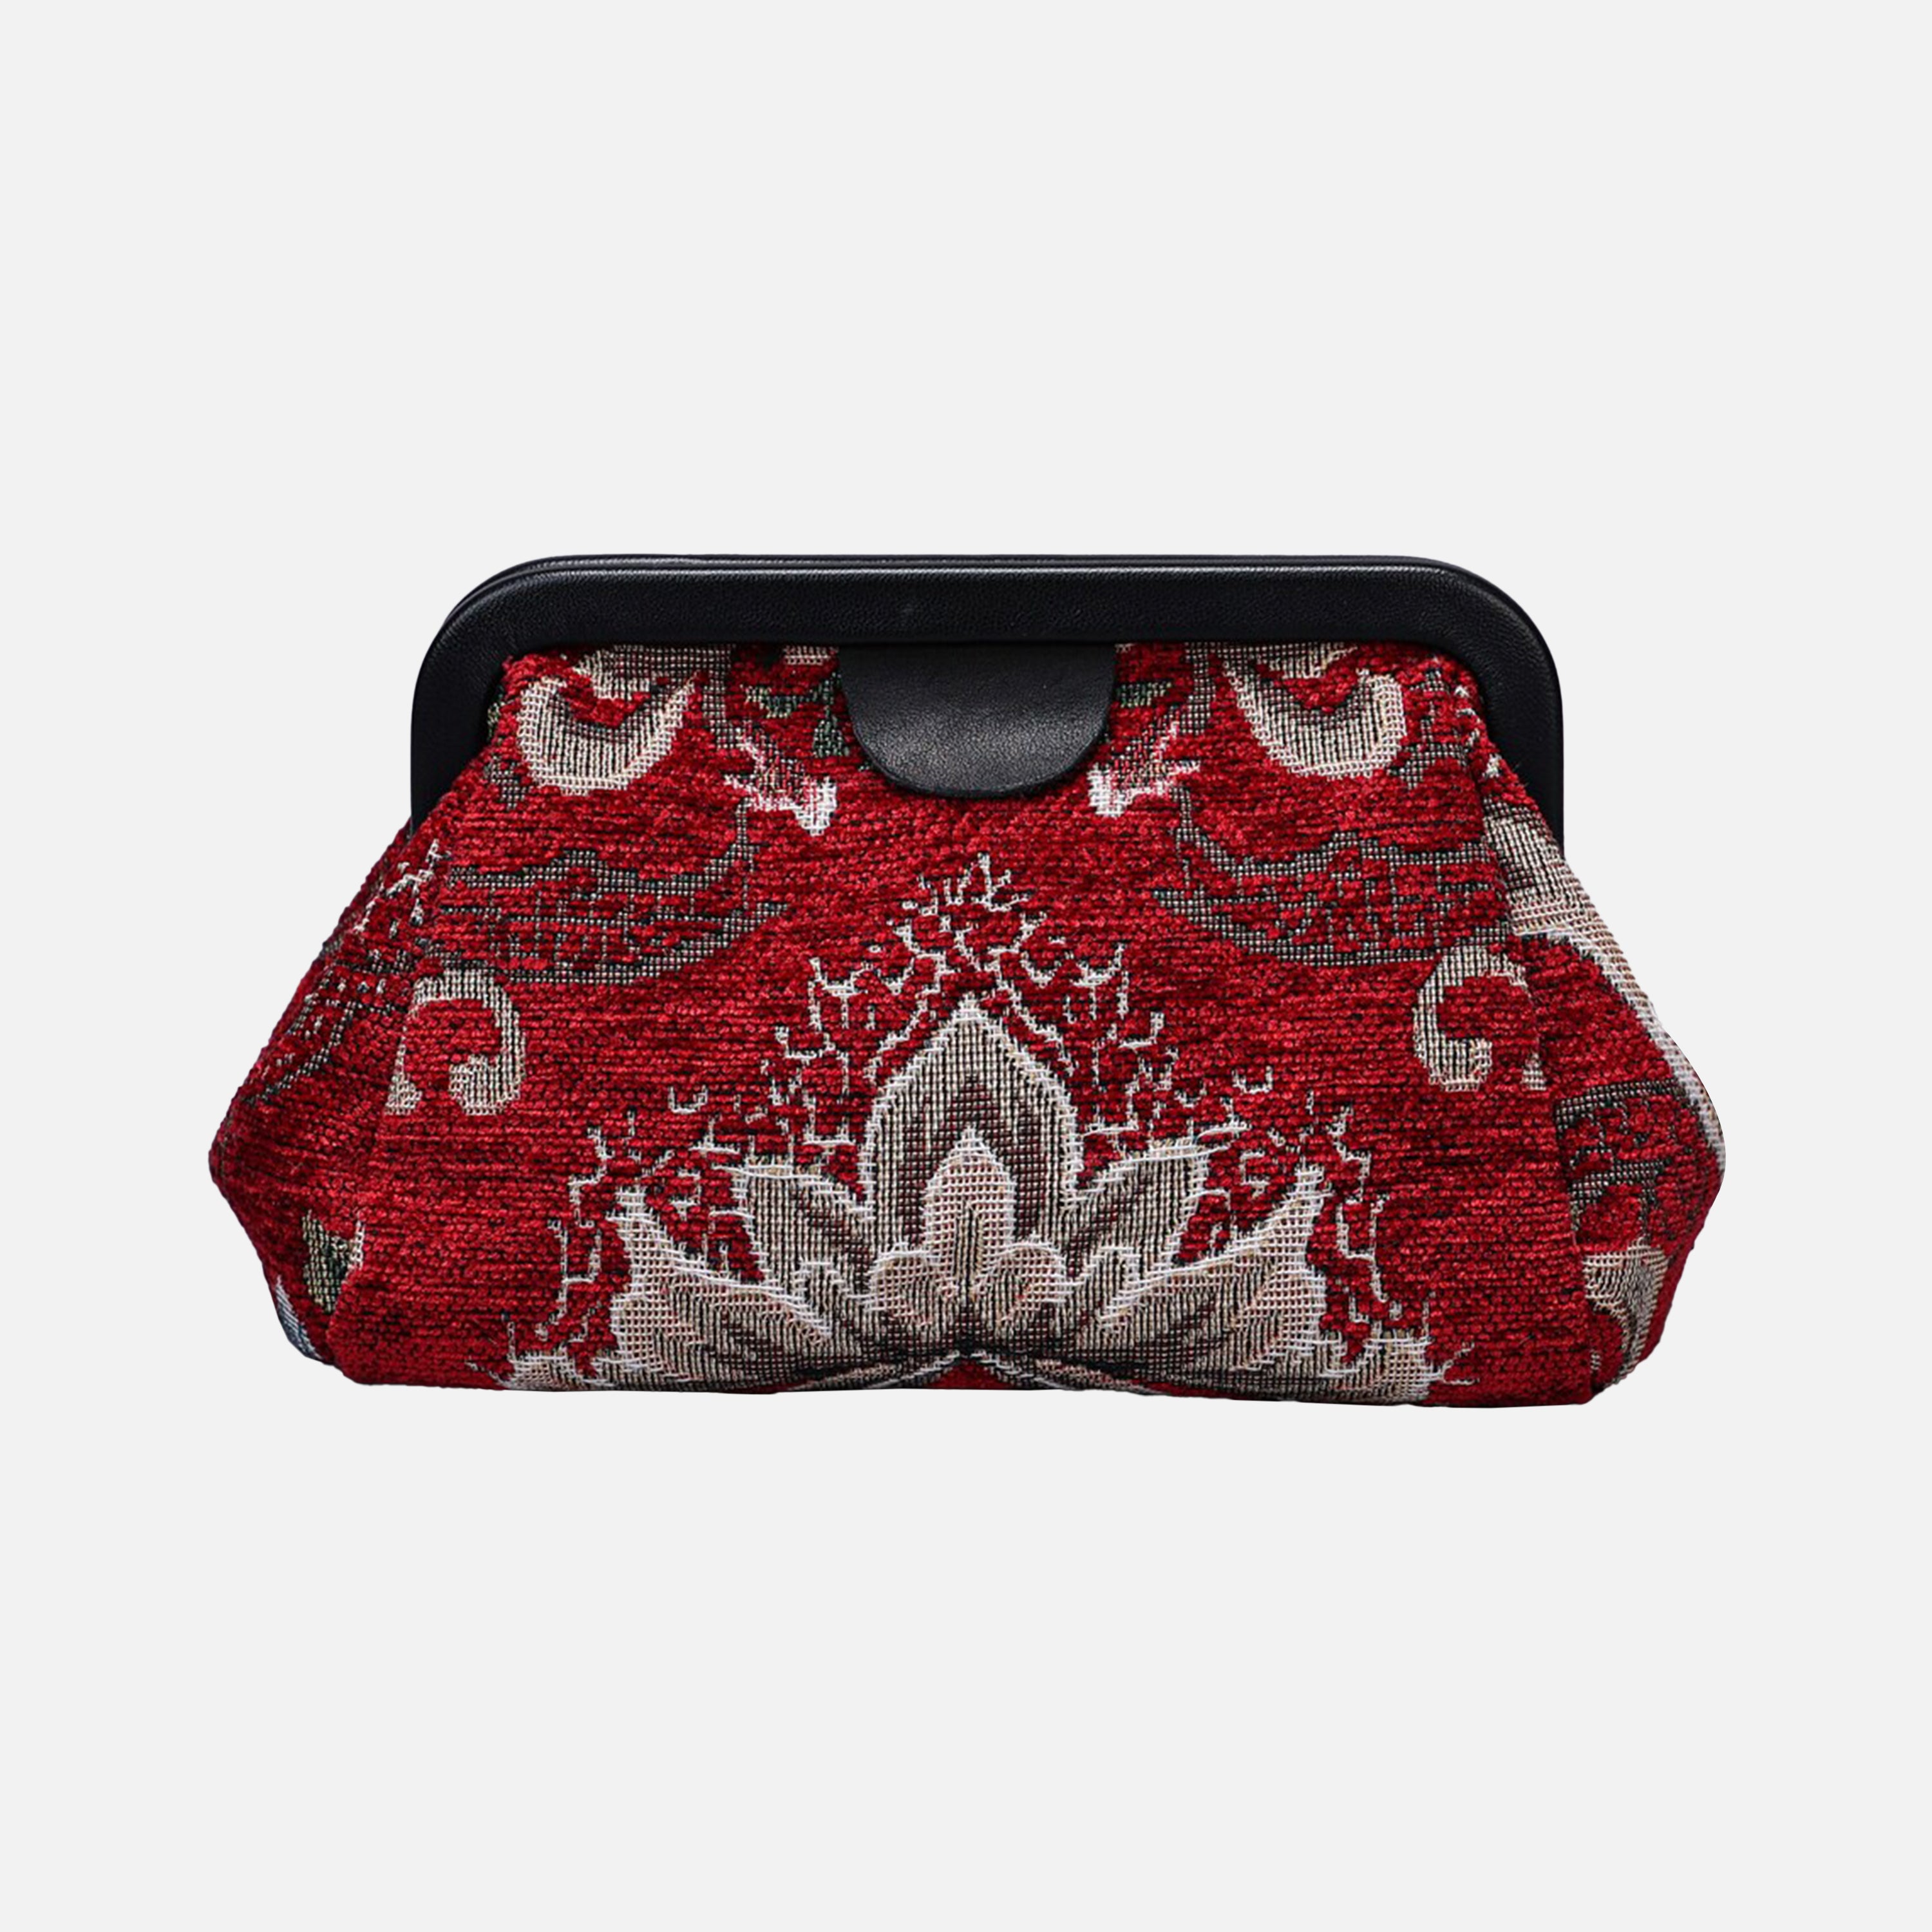 Floral Red Evening Bag Clutch carpet bag MCW Handmade-6